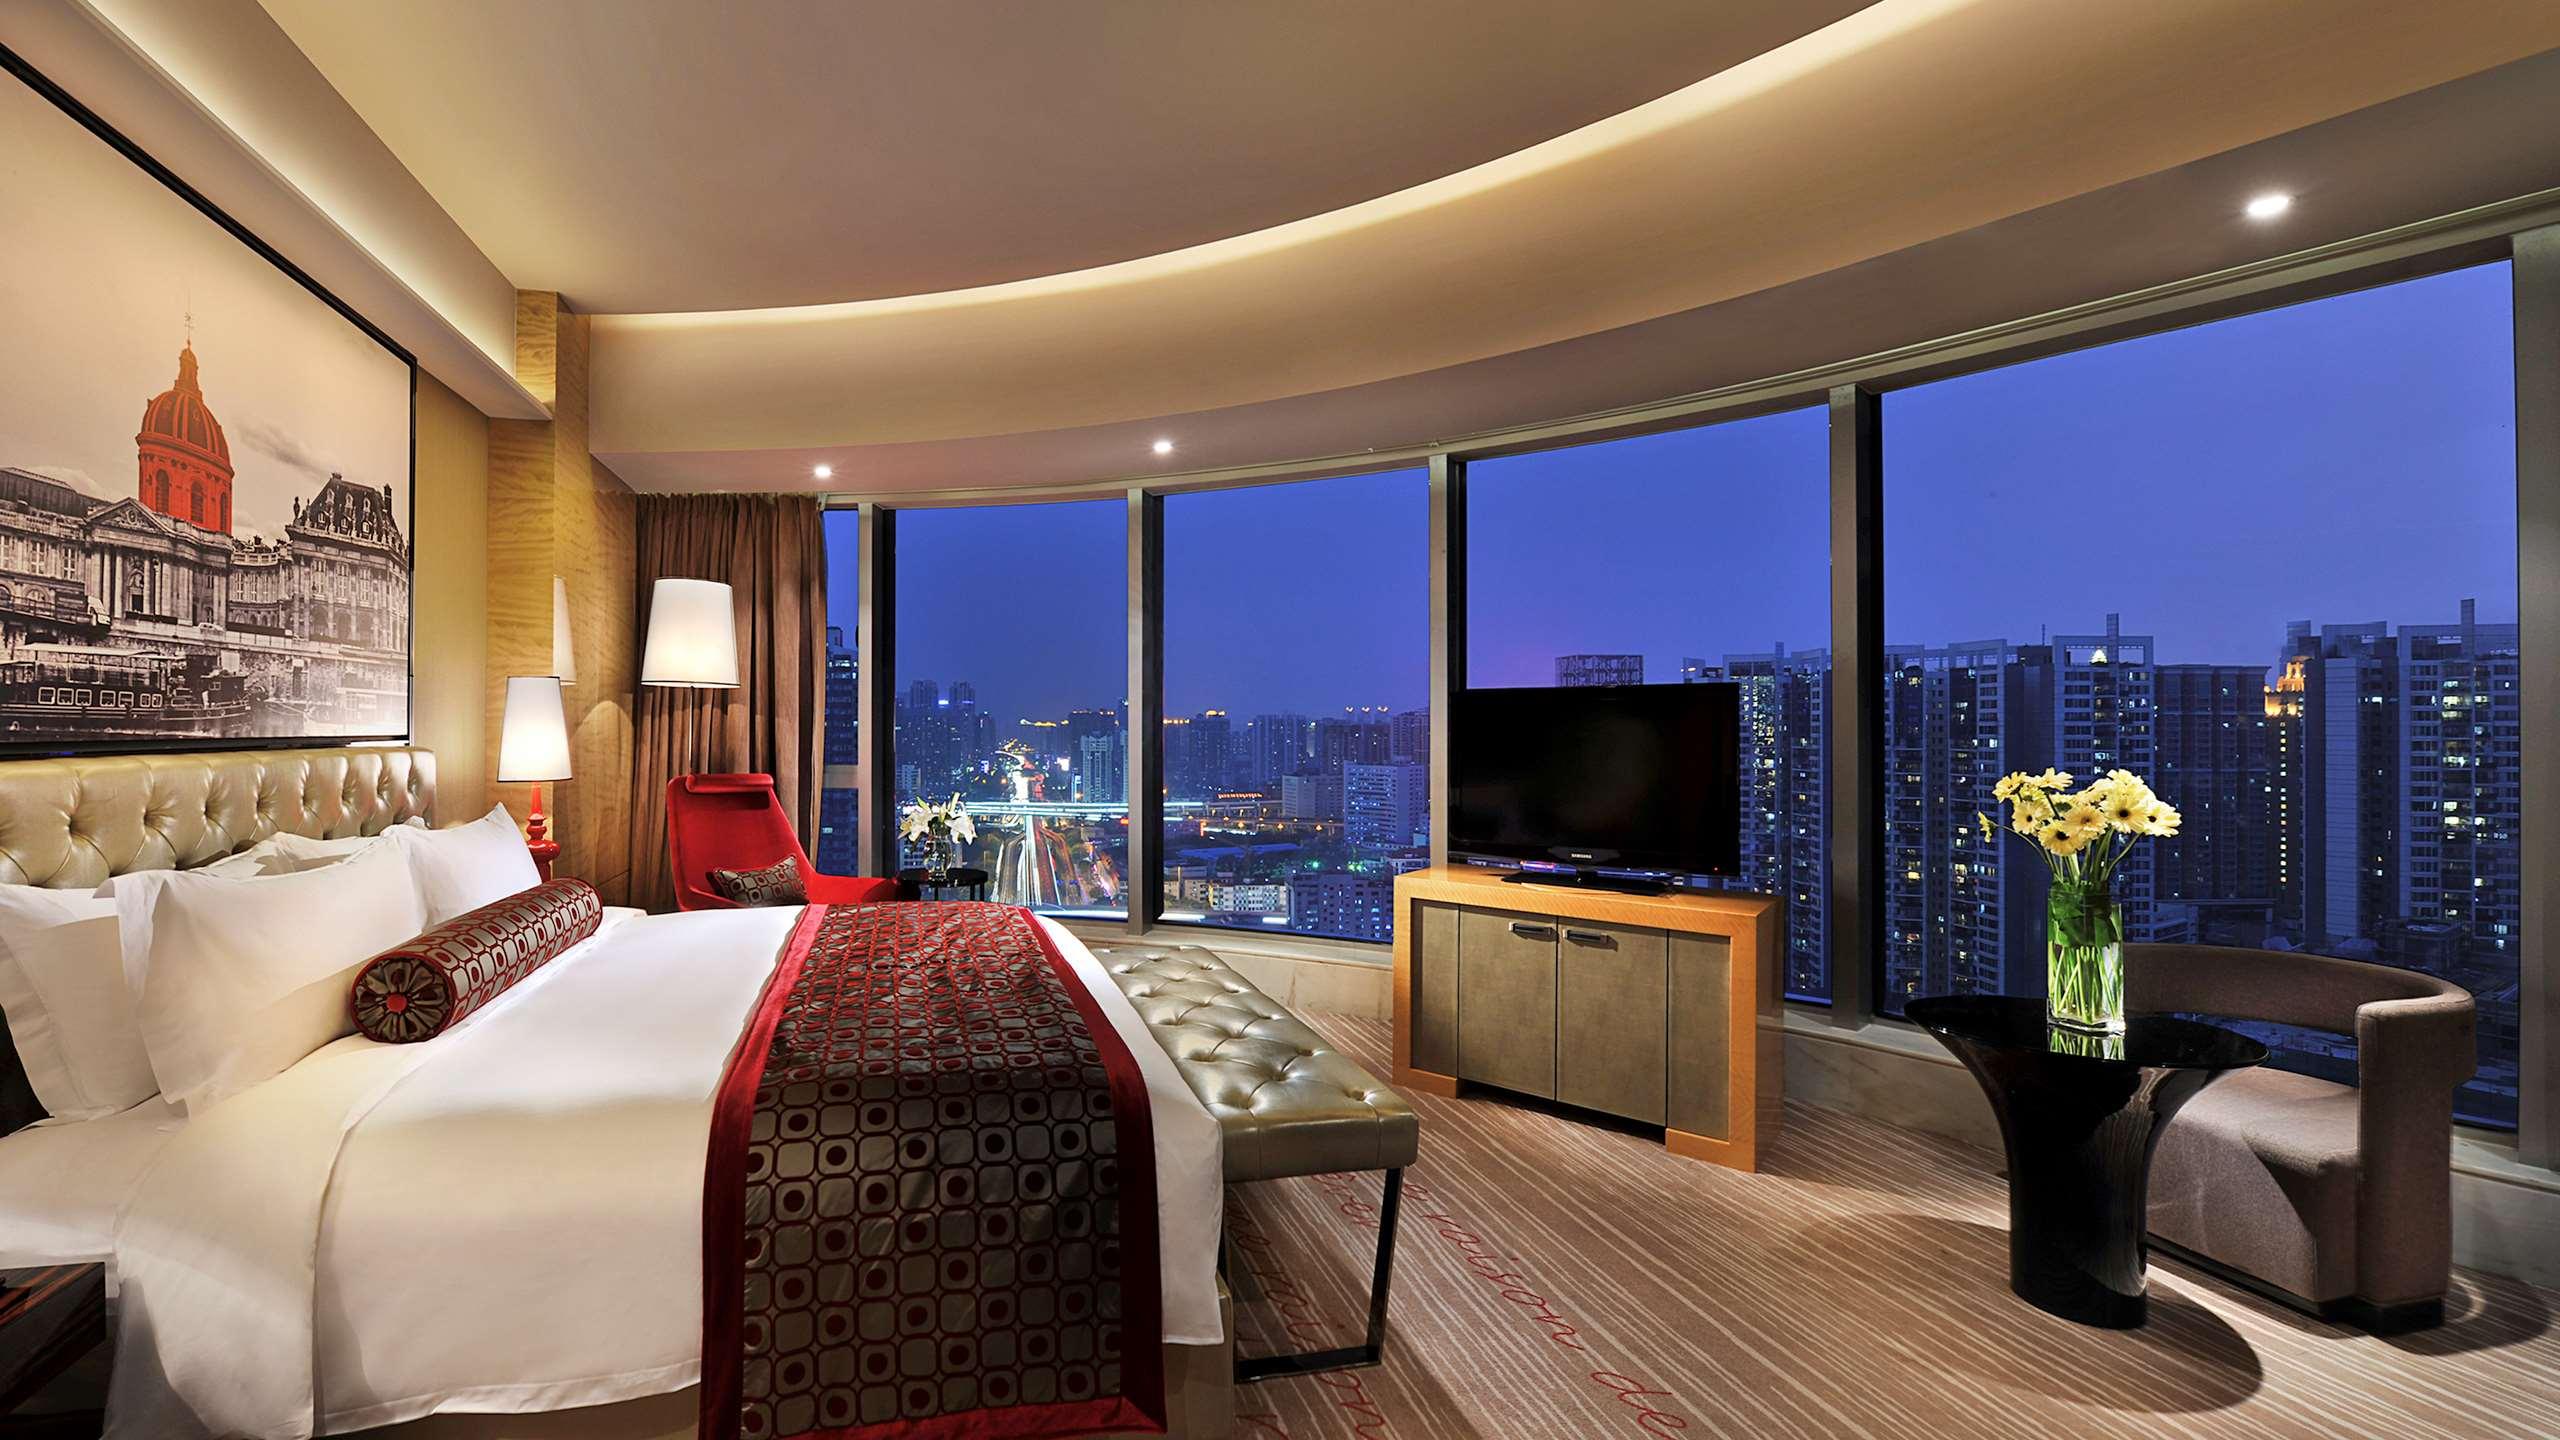 Home Inn Teemall - Guangzhou Guangzhou desde . Hoteles en Cantón - KAYAK